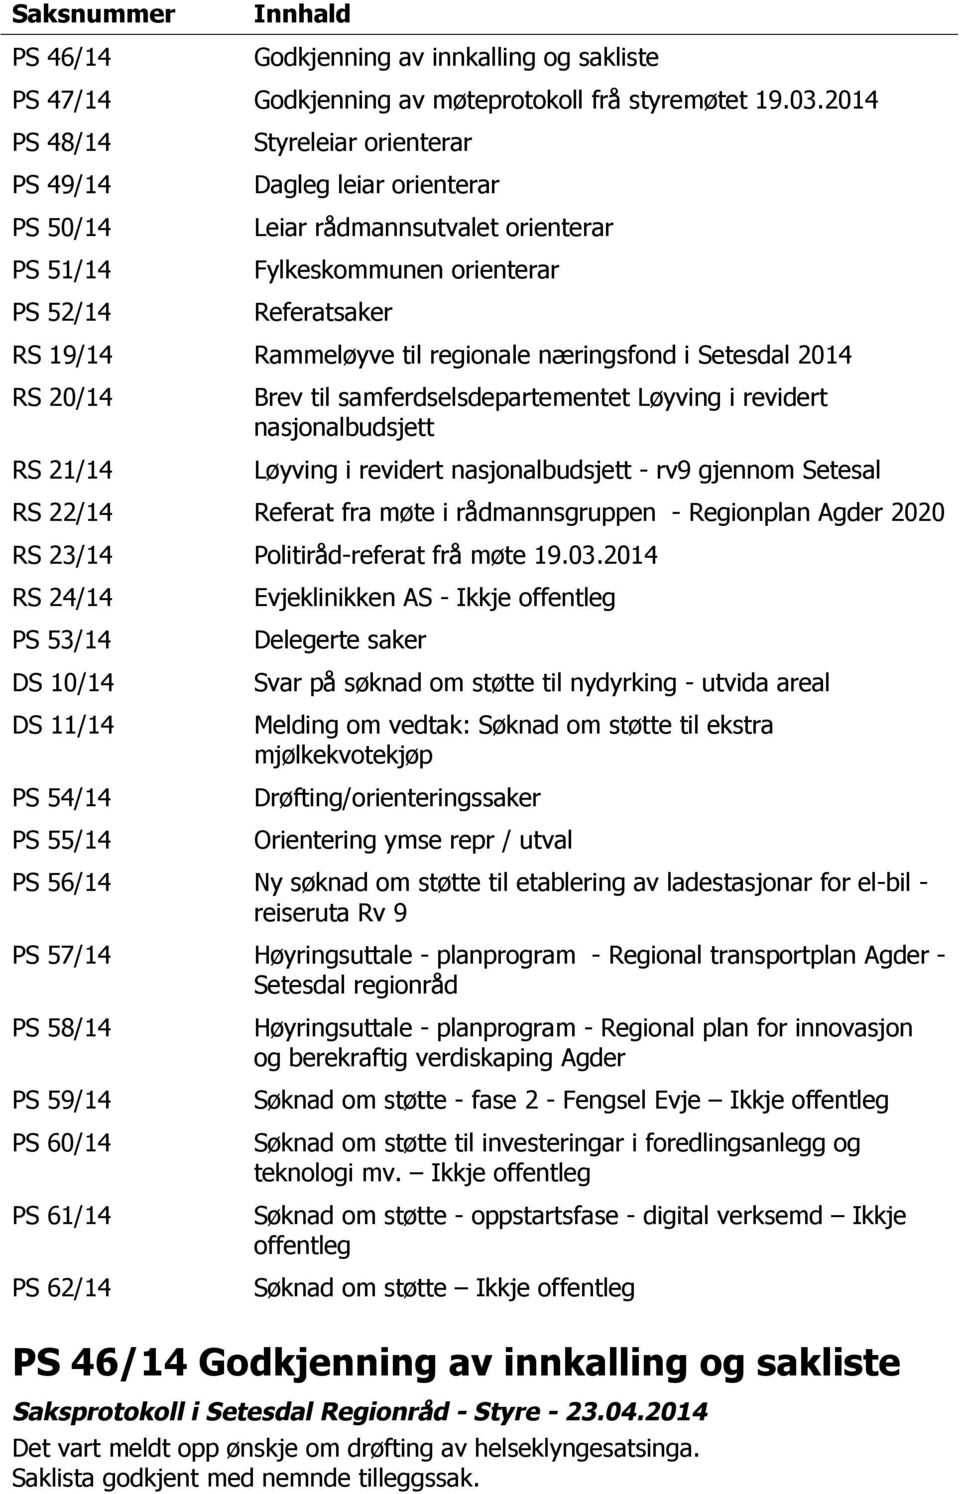 regionale næringsfond i Setesdal 2014 RS 20/14 RS 21/14 Brev til samferdselsdepartementet Løyving i revidert nasjonalbudsjett Løyving i revidert nasjonalbudsjett - rv9 gjennom Setesal RS 22/14